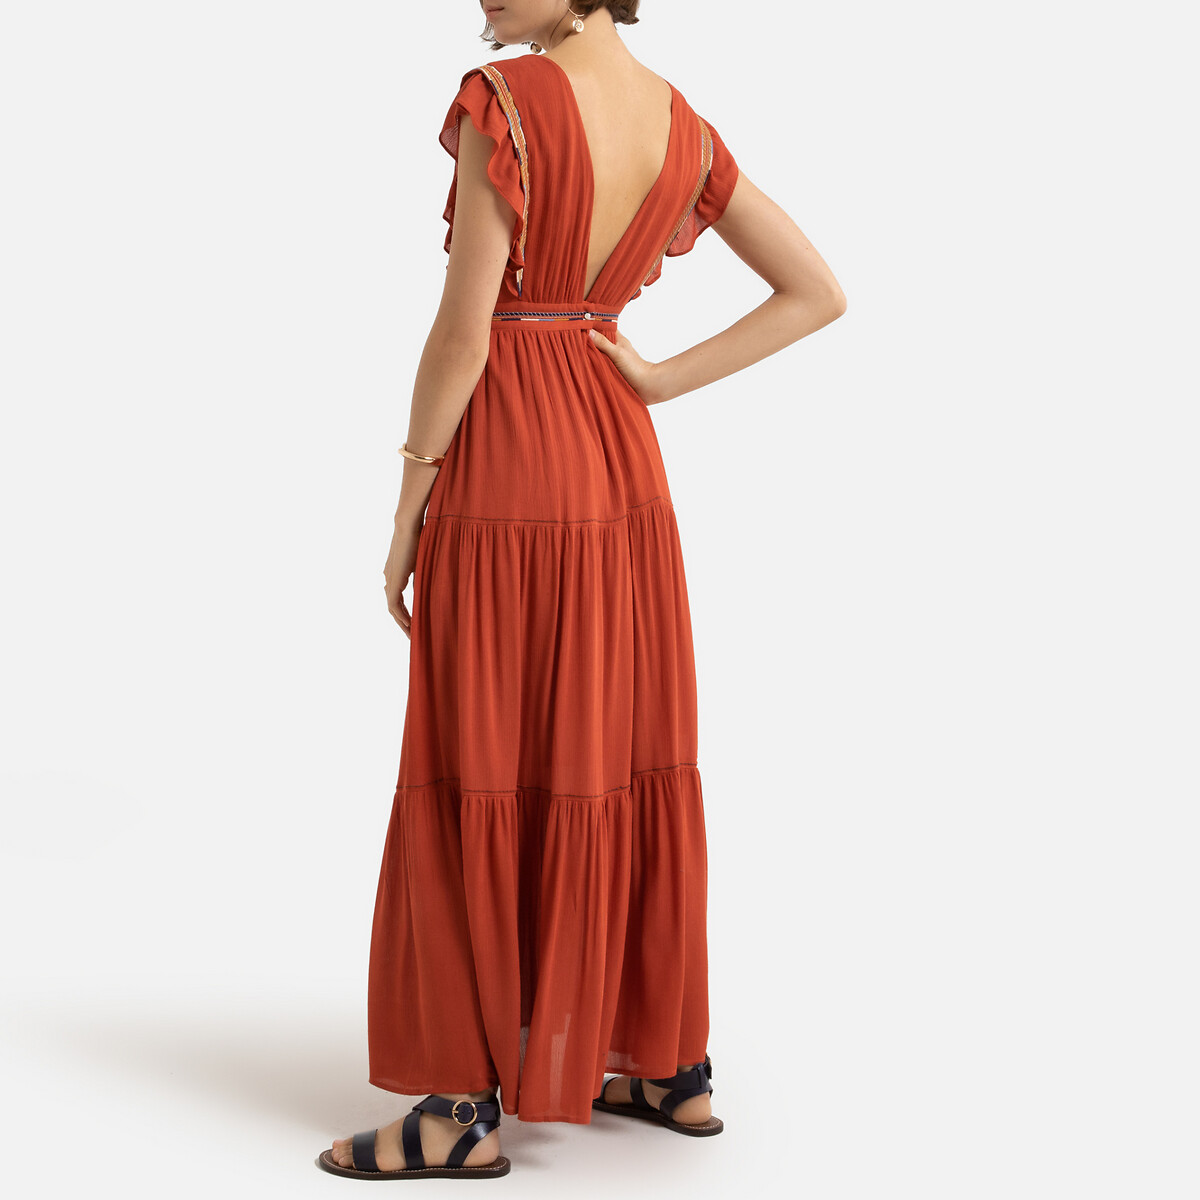 Платье LaRedoute Длинное V-образный вырез короткие рукава 1(S) оранжевый, размер 1(S) Длинное V-образный вырез короткие рукава 1(S) оранжевый - фото 3